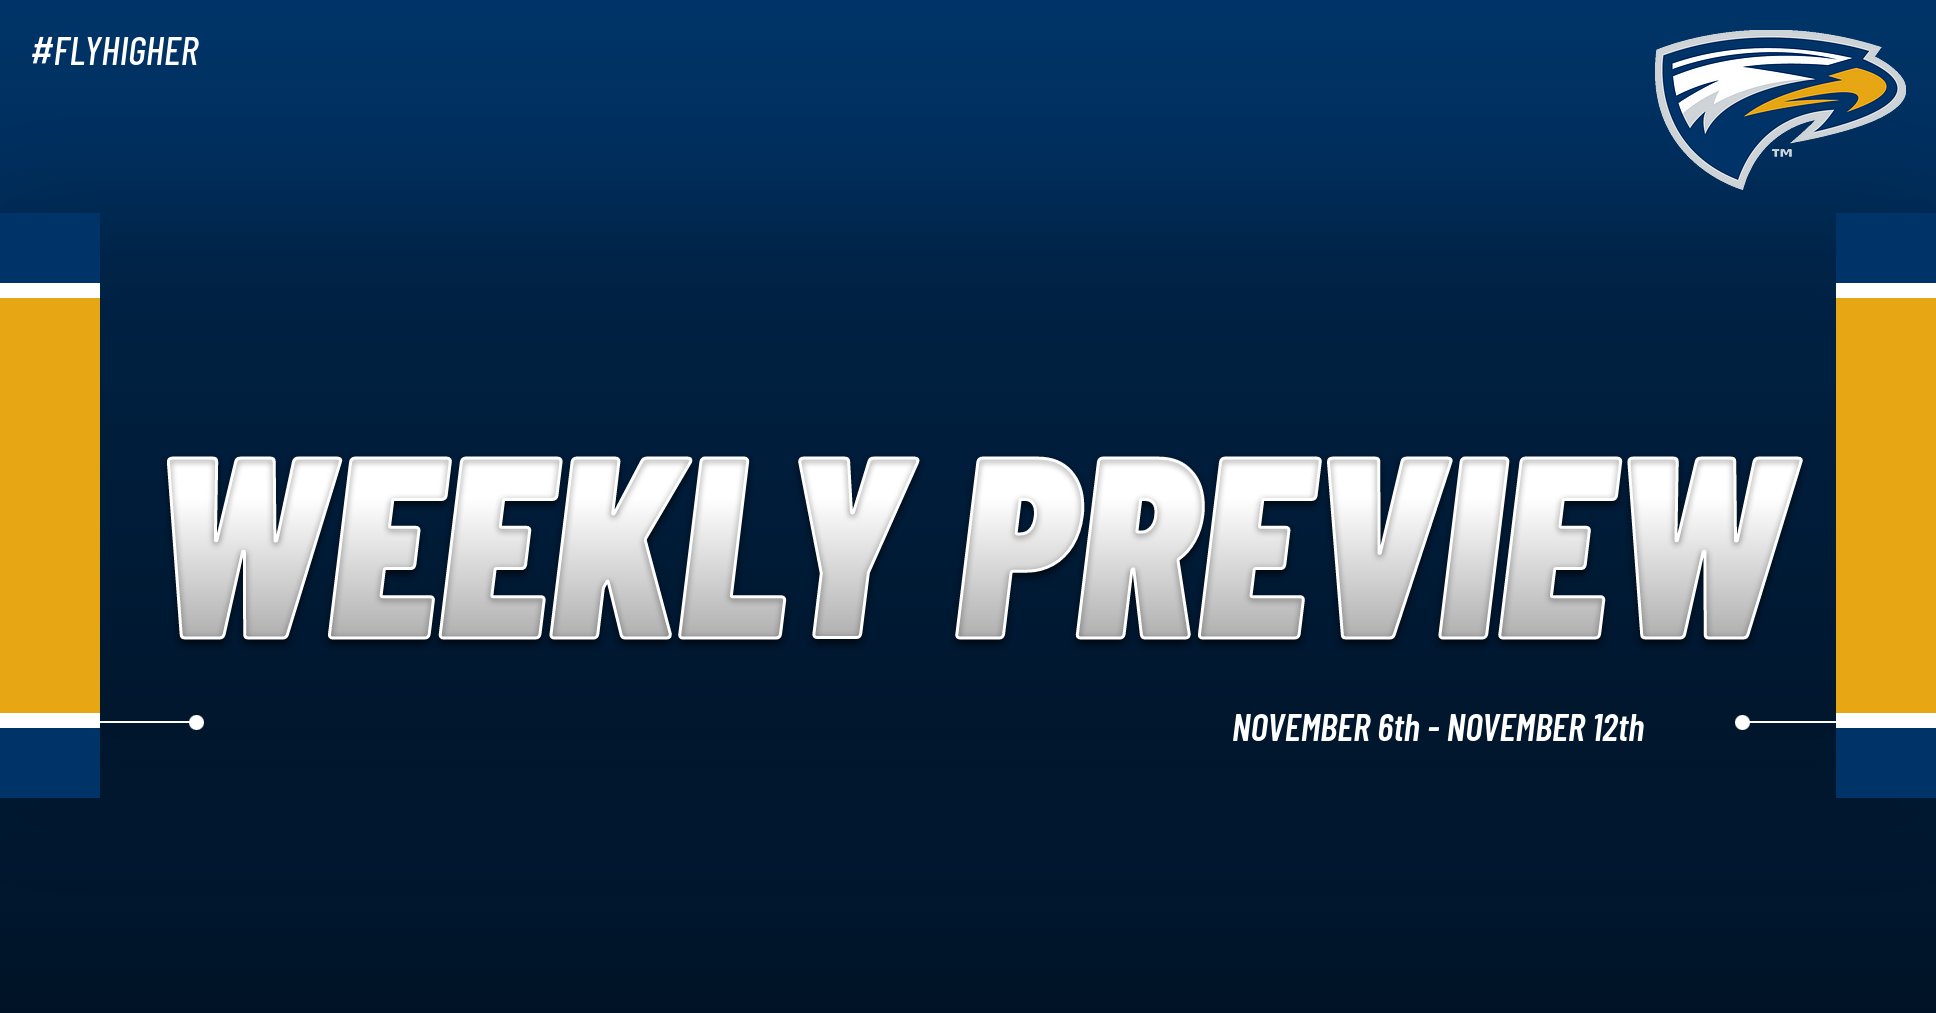 Emory Athletics Weekly Preview: November 6th - November 12th